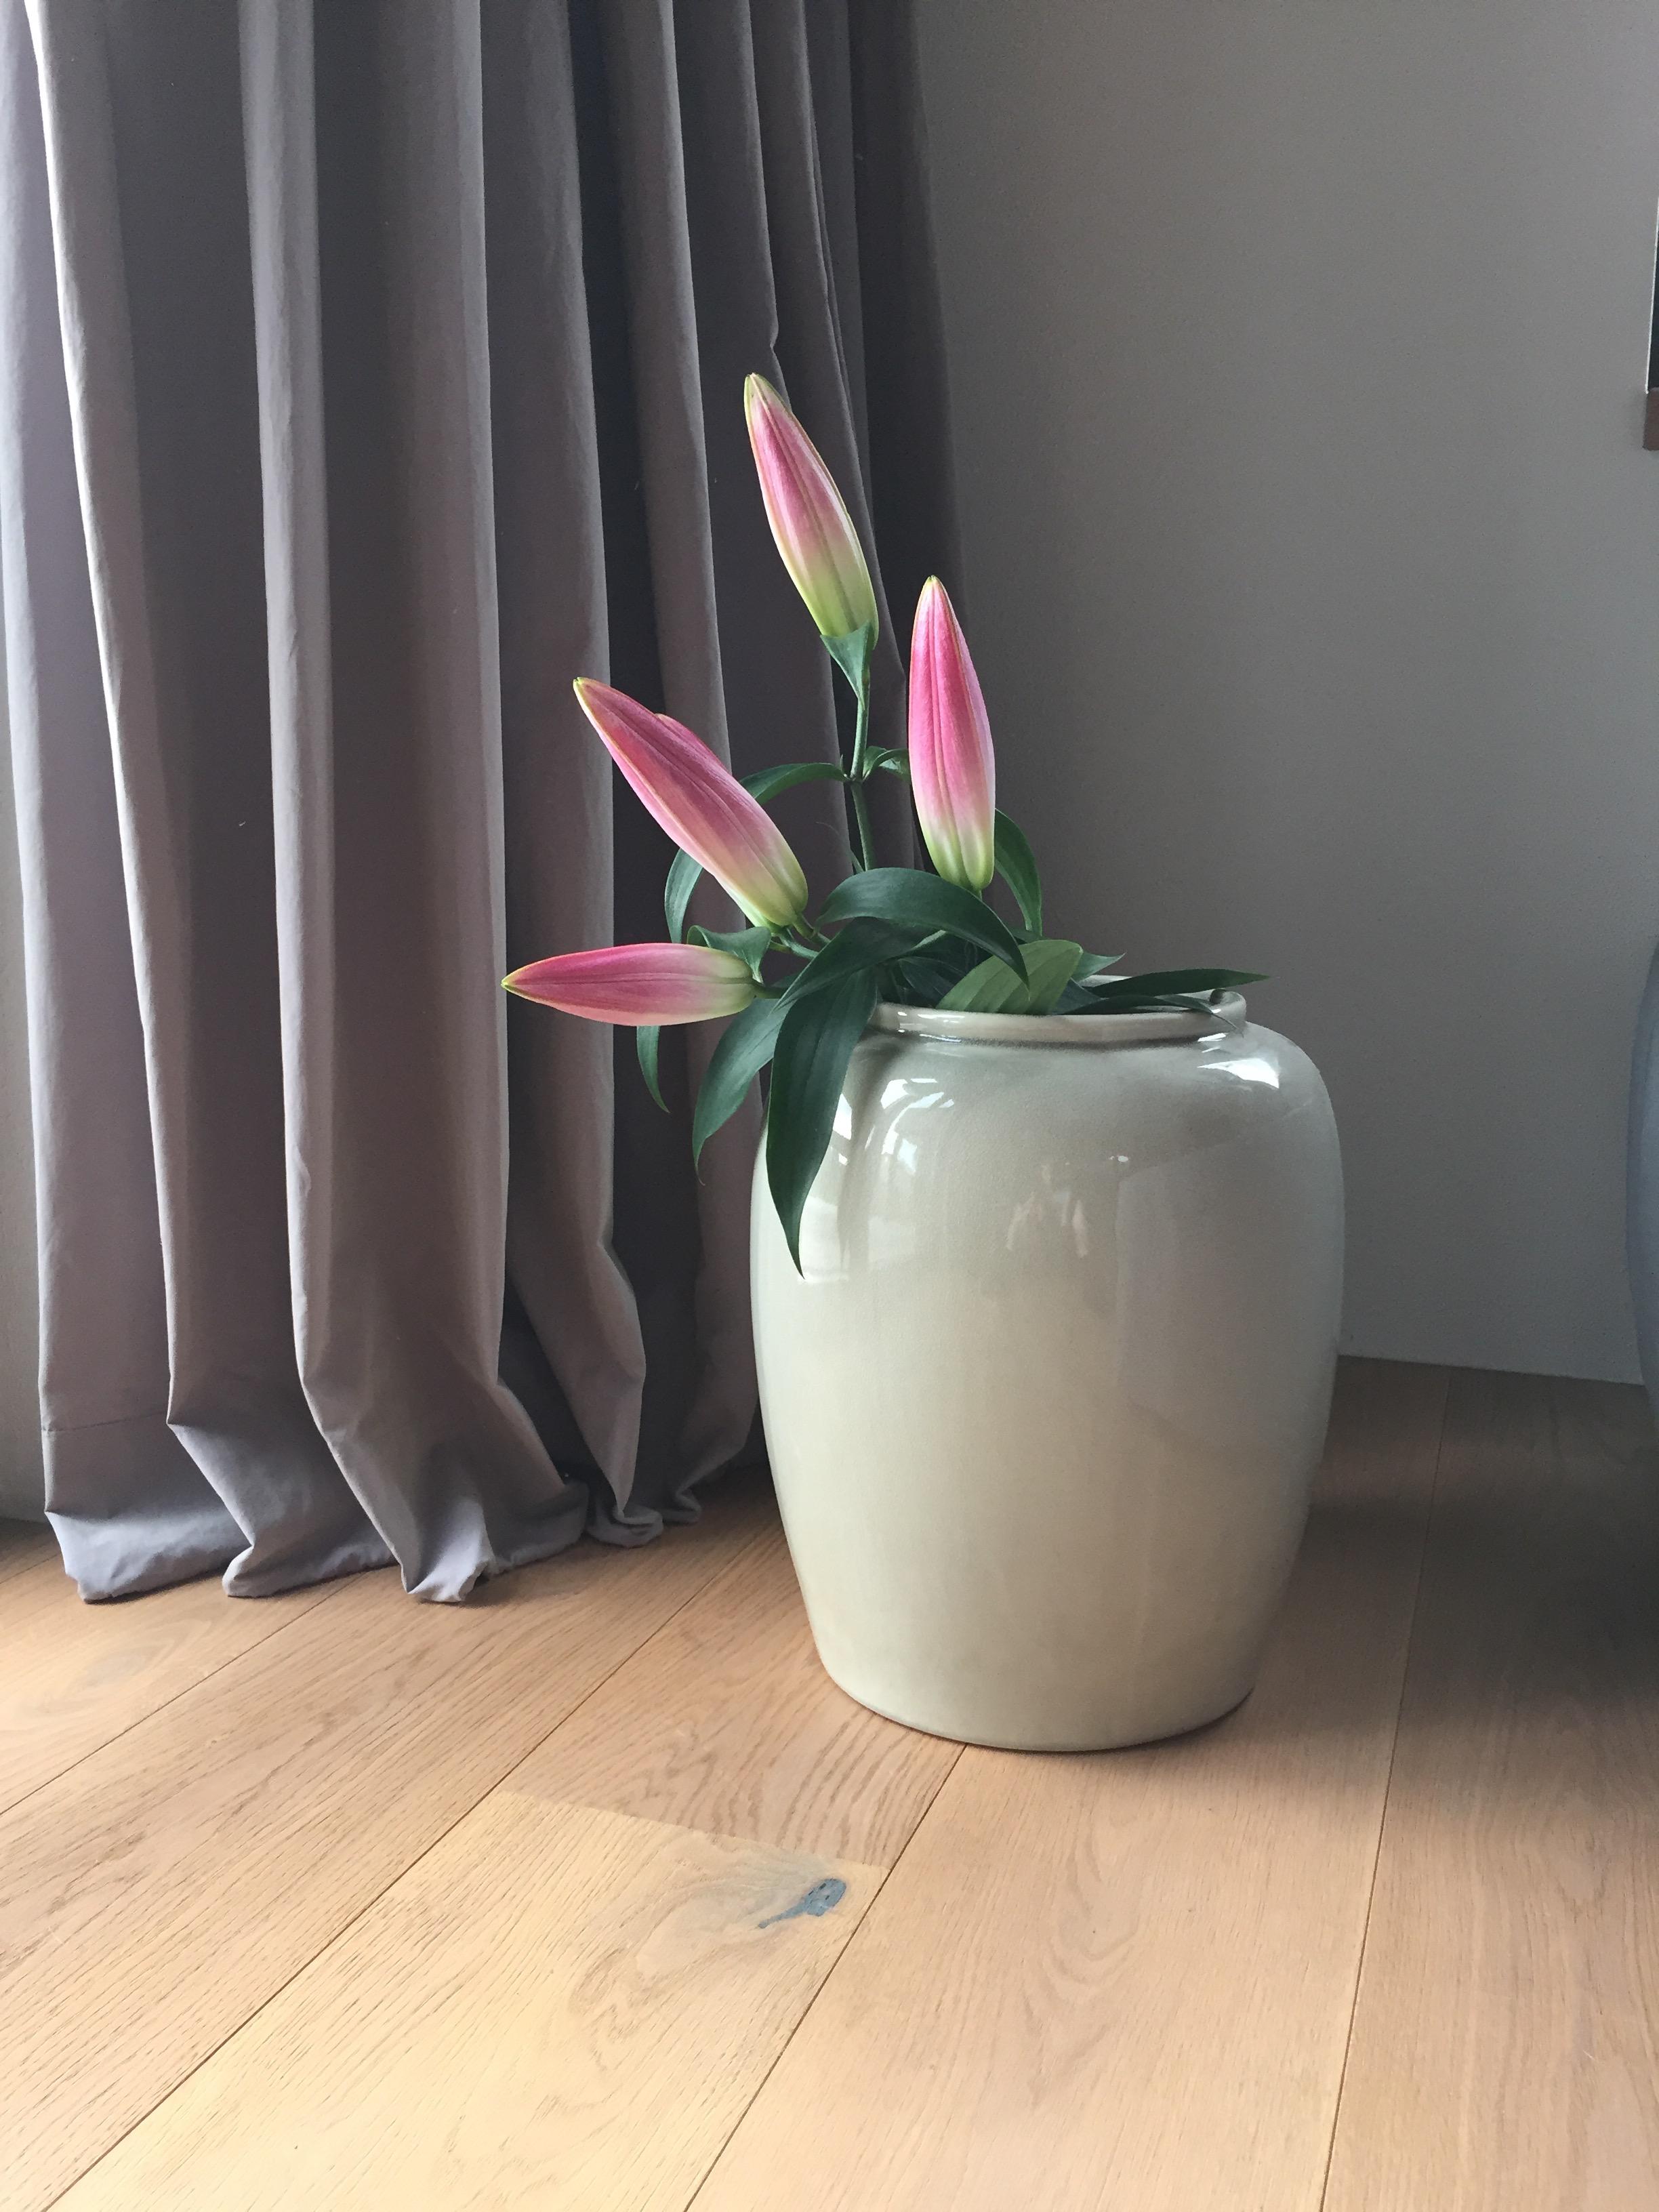 Orientlilie in meiner Lieblings Bodenvase
#crackle #vase #brostecopenhagen